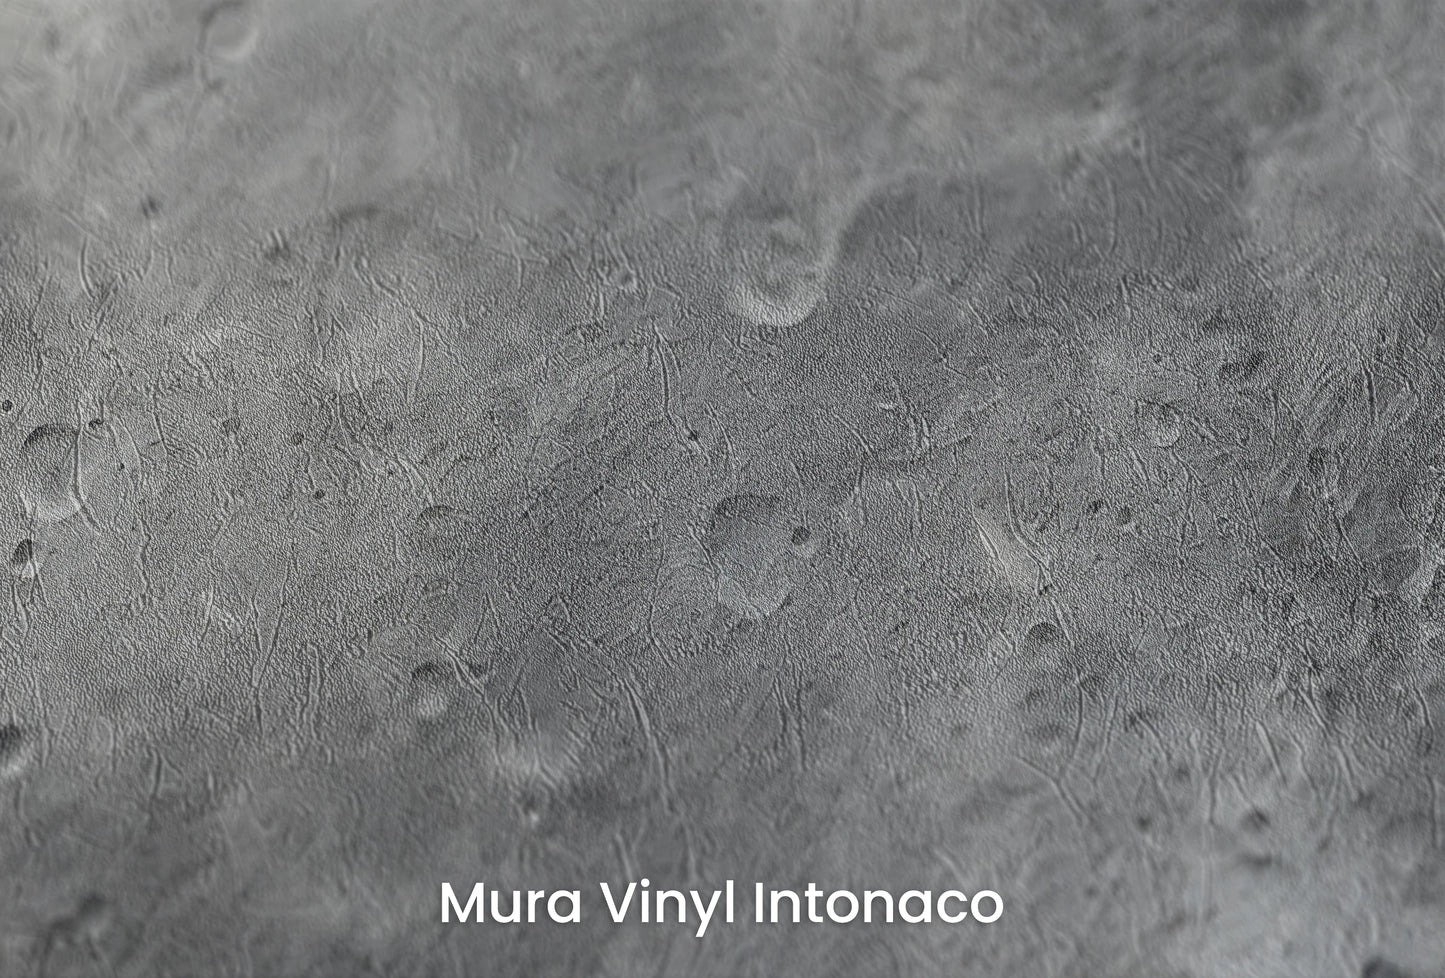 Zbliżenie na artystyczną fototapetę o nazwie Monochrome Moon na podłożu Mura Vinyl Intonaco - struktura tartego tynku.